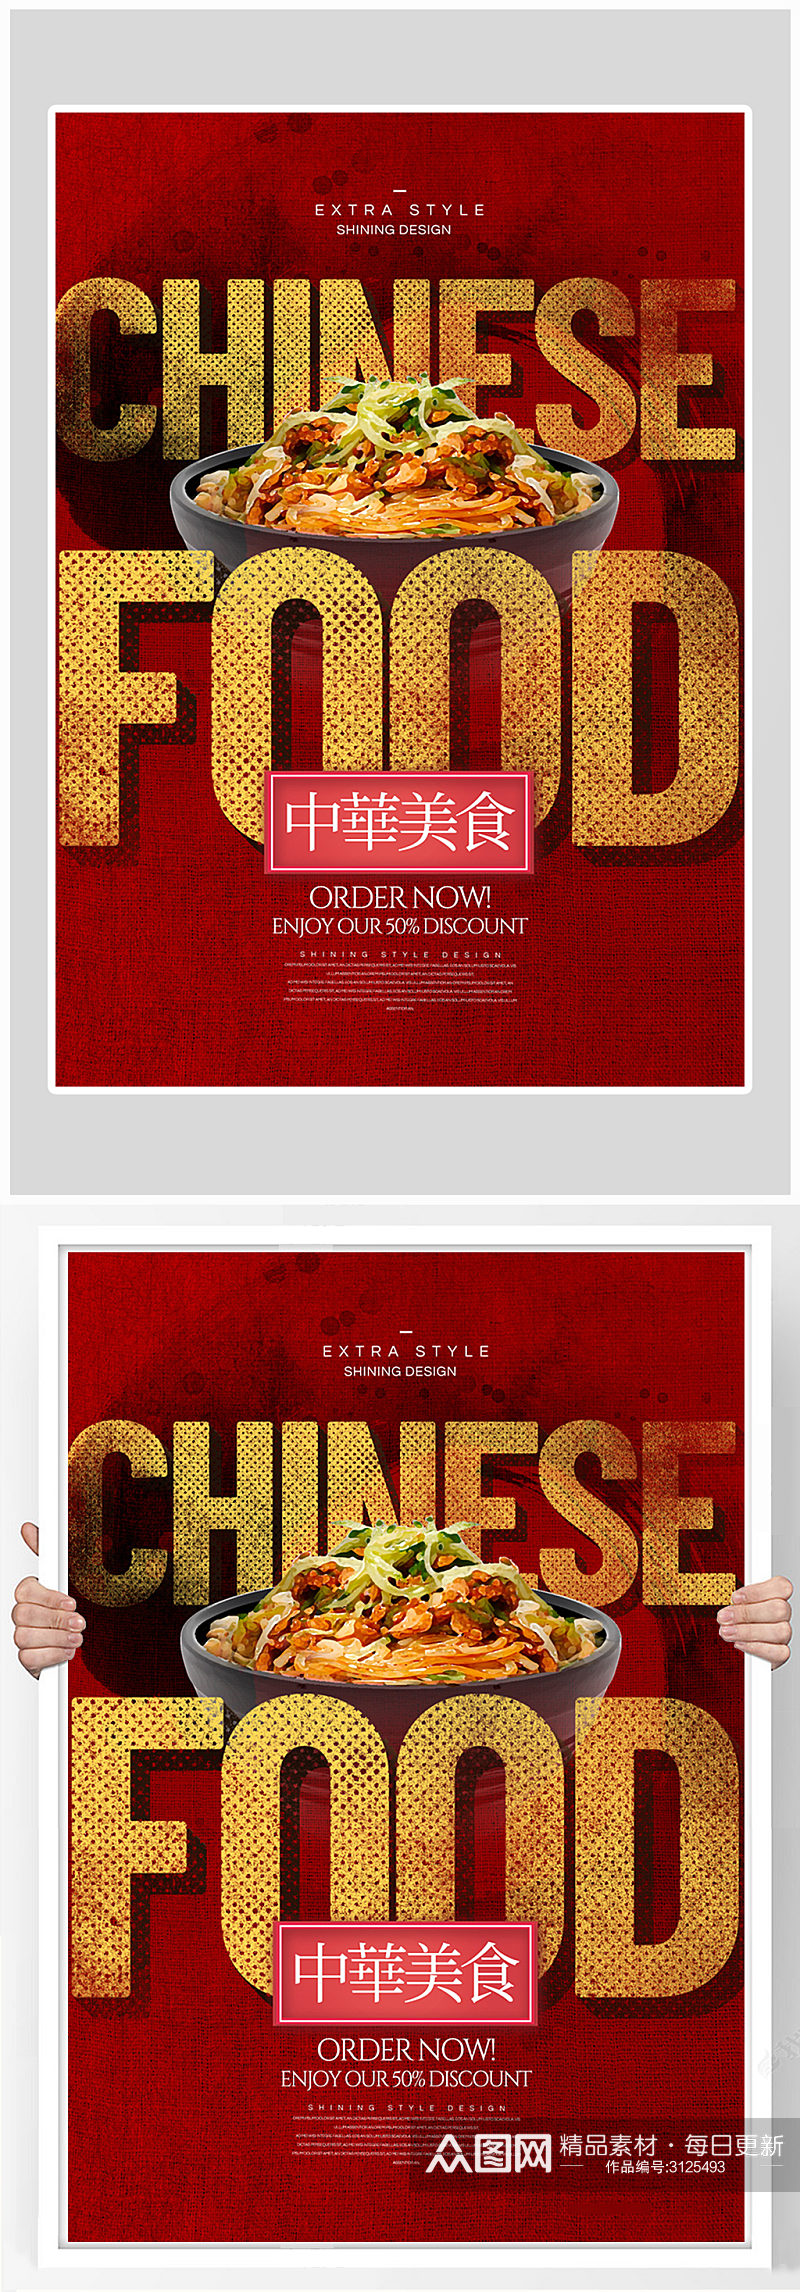 创意红色质感美食面条海报设计素材